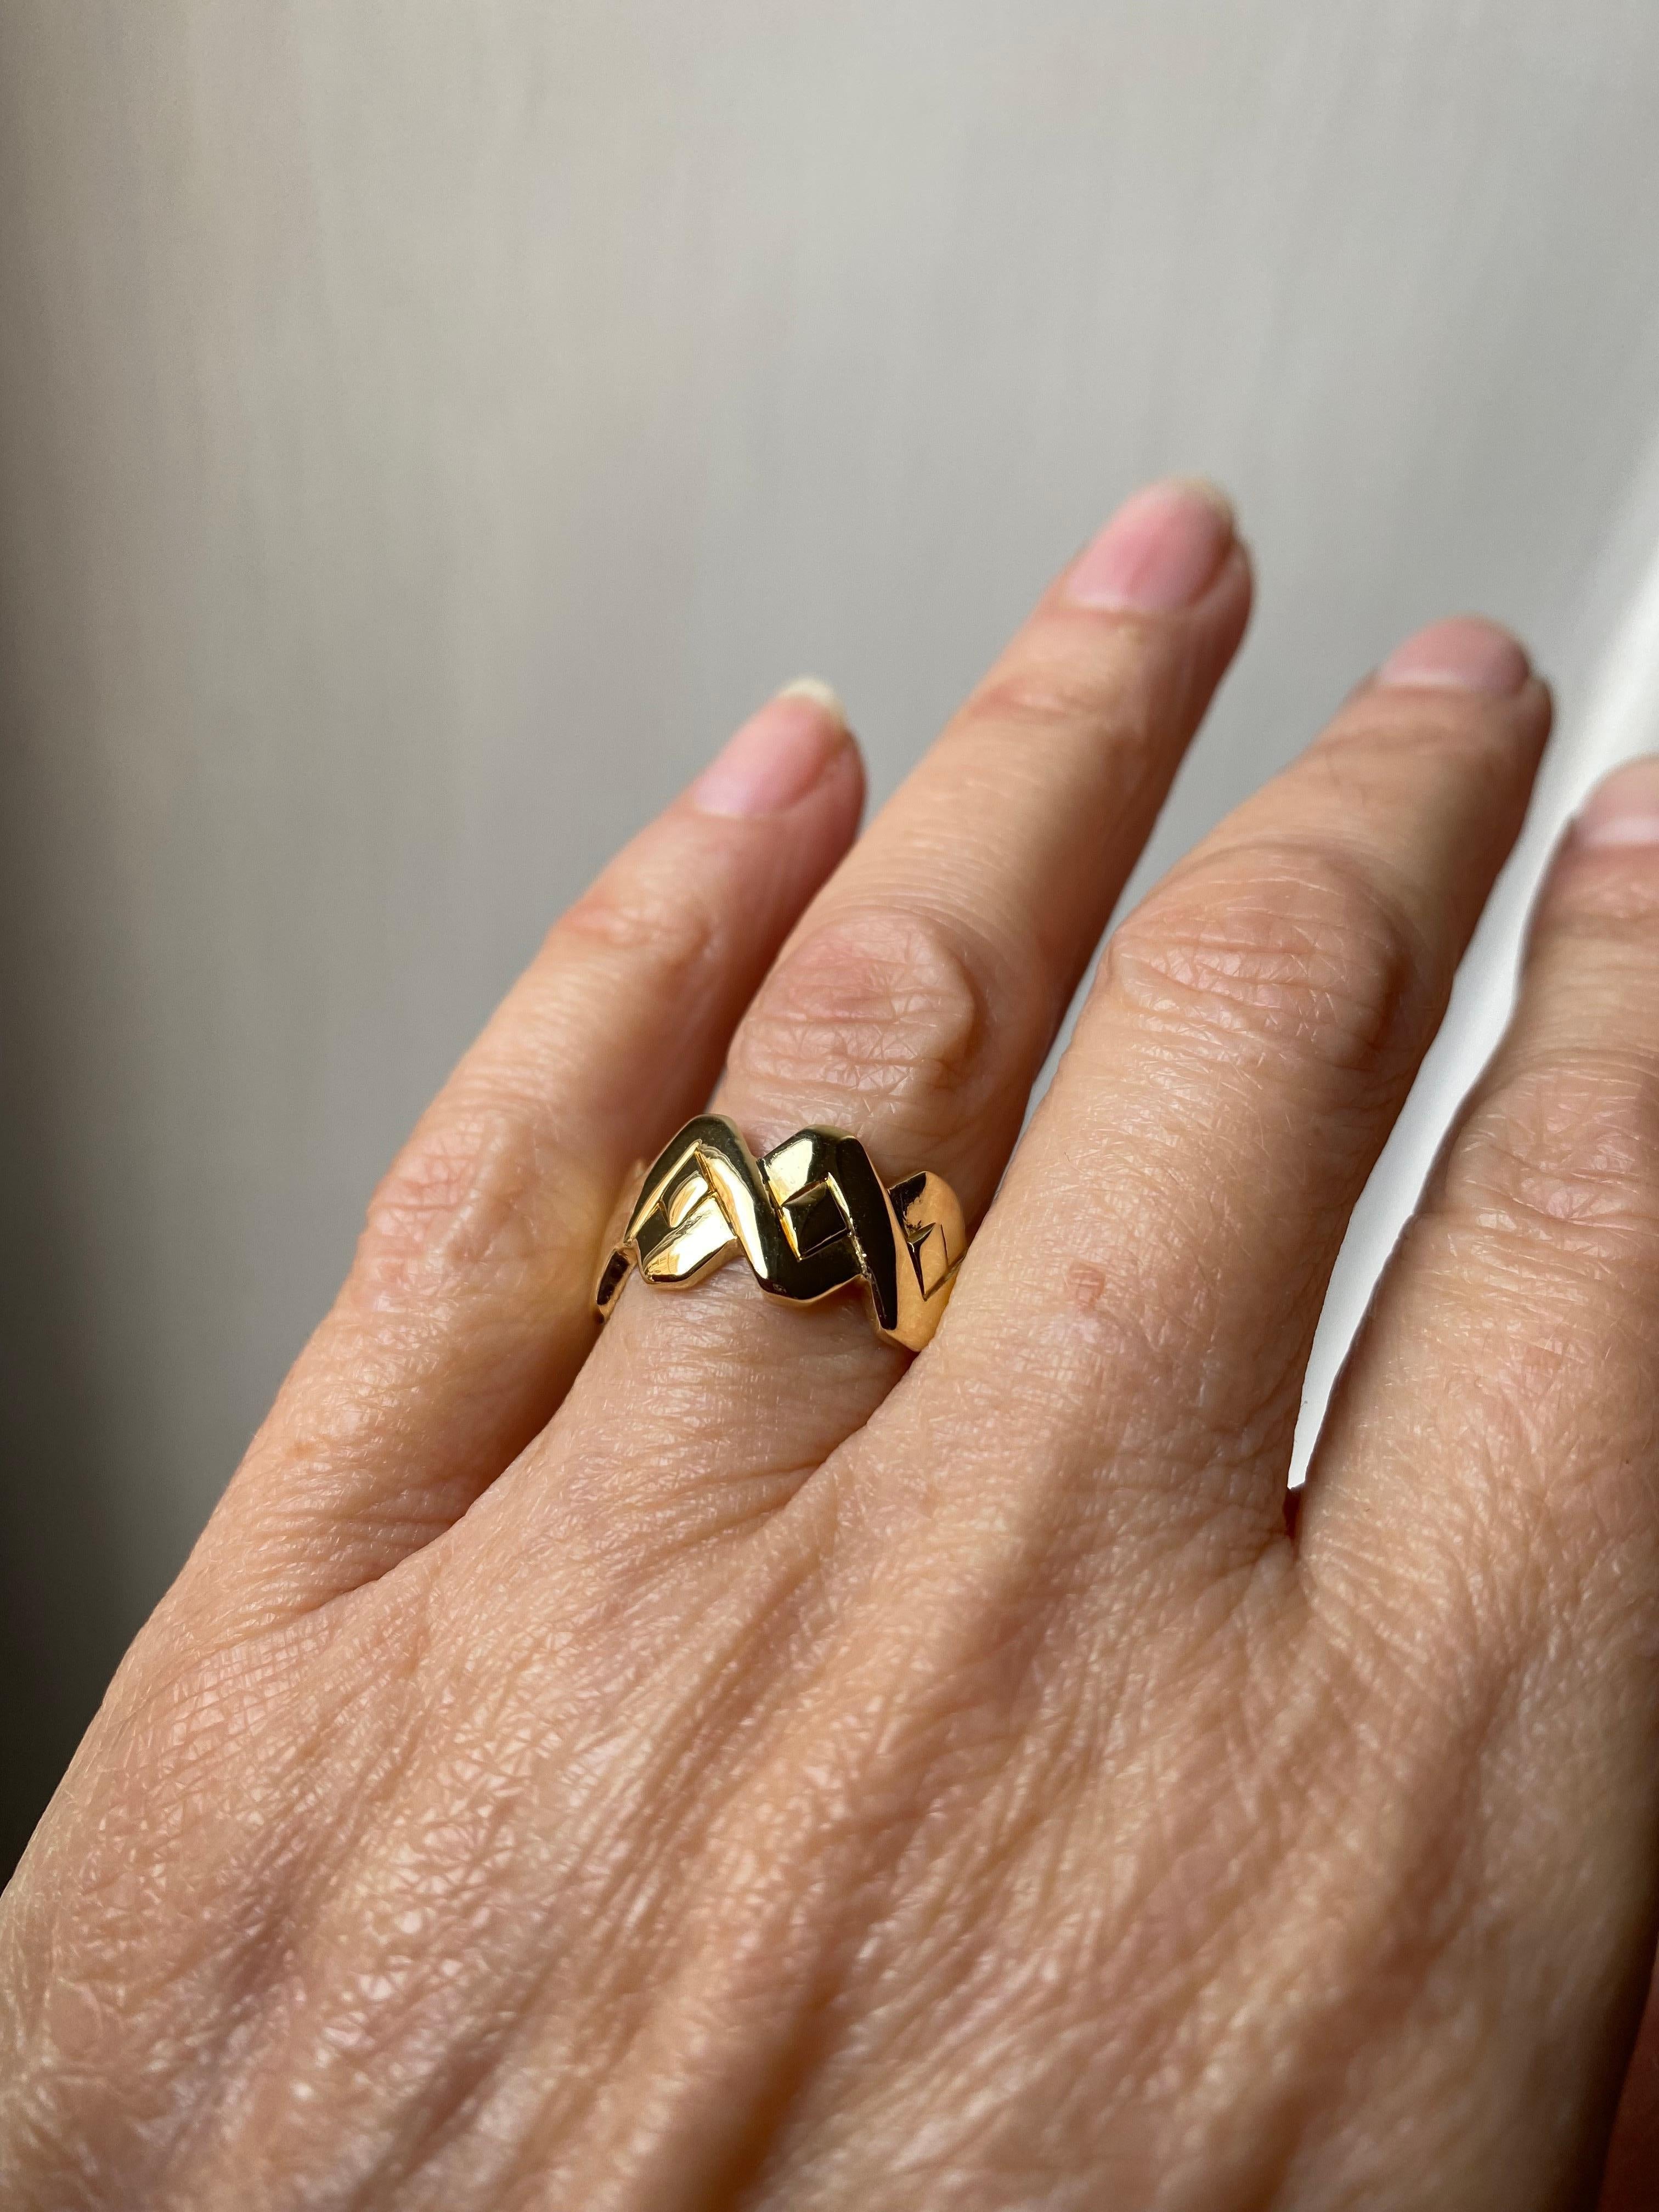 Rossella Ugolini Design Collection, Handgefertigter Unisex-Ring in gedrehter Form. Die handgeschnitzte Oberfläche ist mit zwei gewundenen Streifen versehen, die in der Mitte einen quadratischen Raum bilden. Ein Schmuckstück für jeden Tag, ein